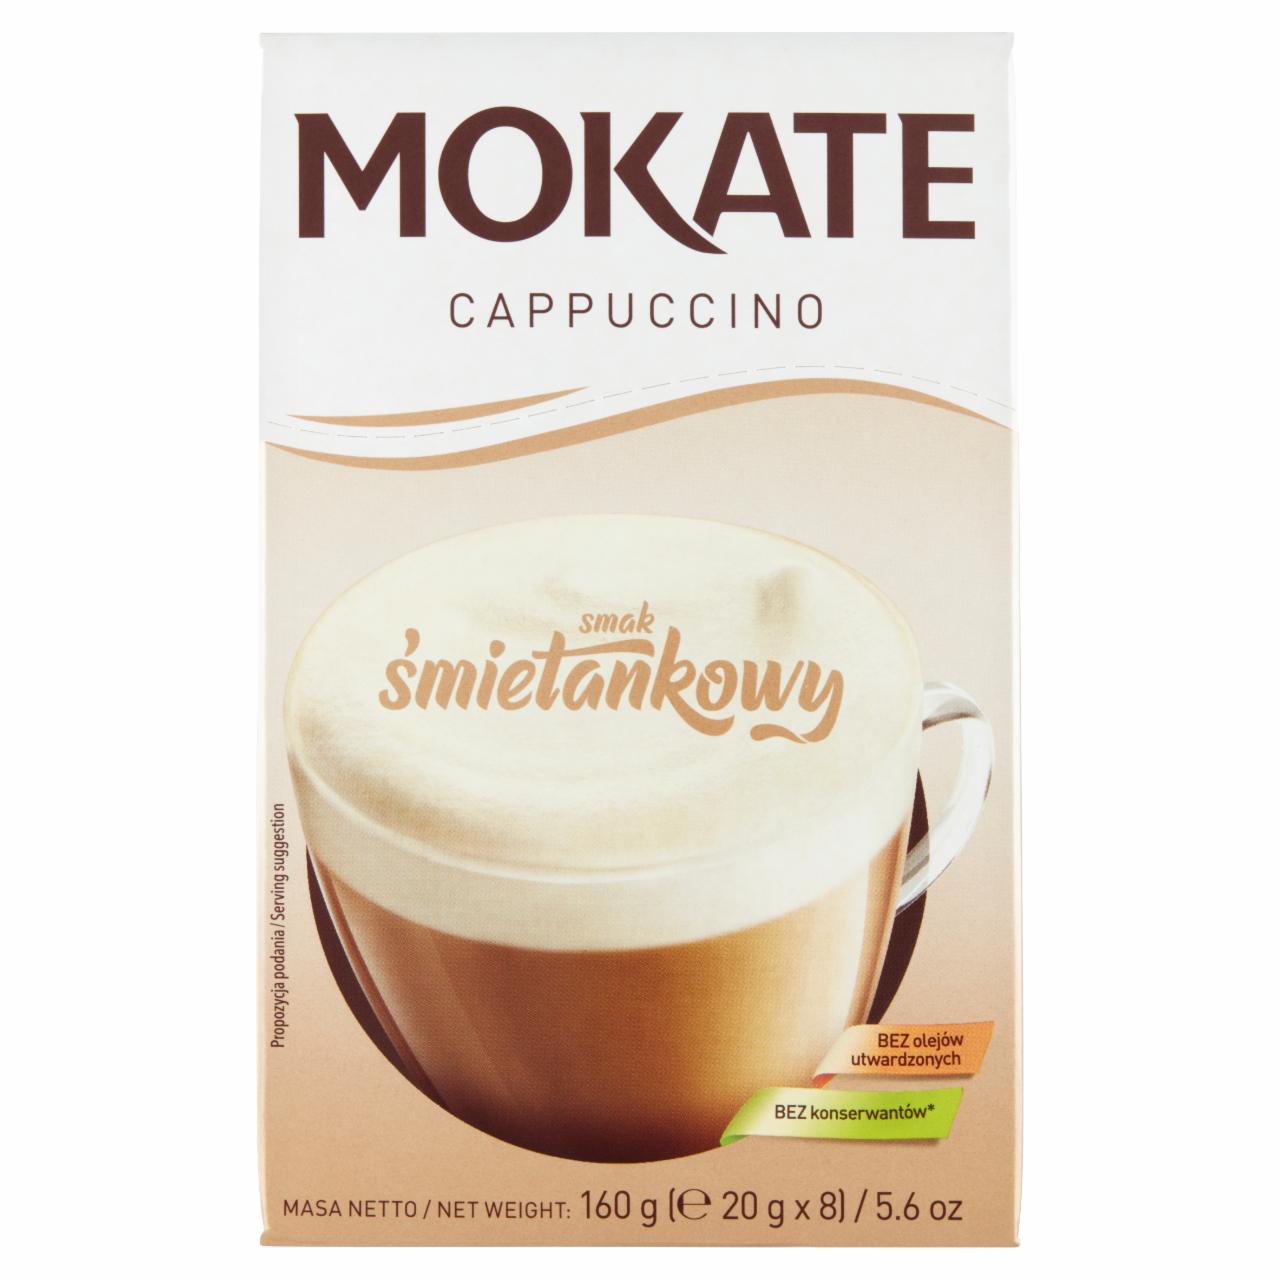 Zdjęcia - Mokate Cappuccino smak śmietankowy 160 g (8 x 20 g)